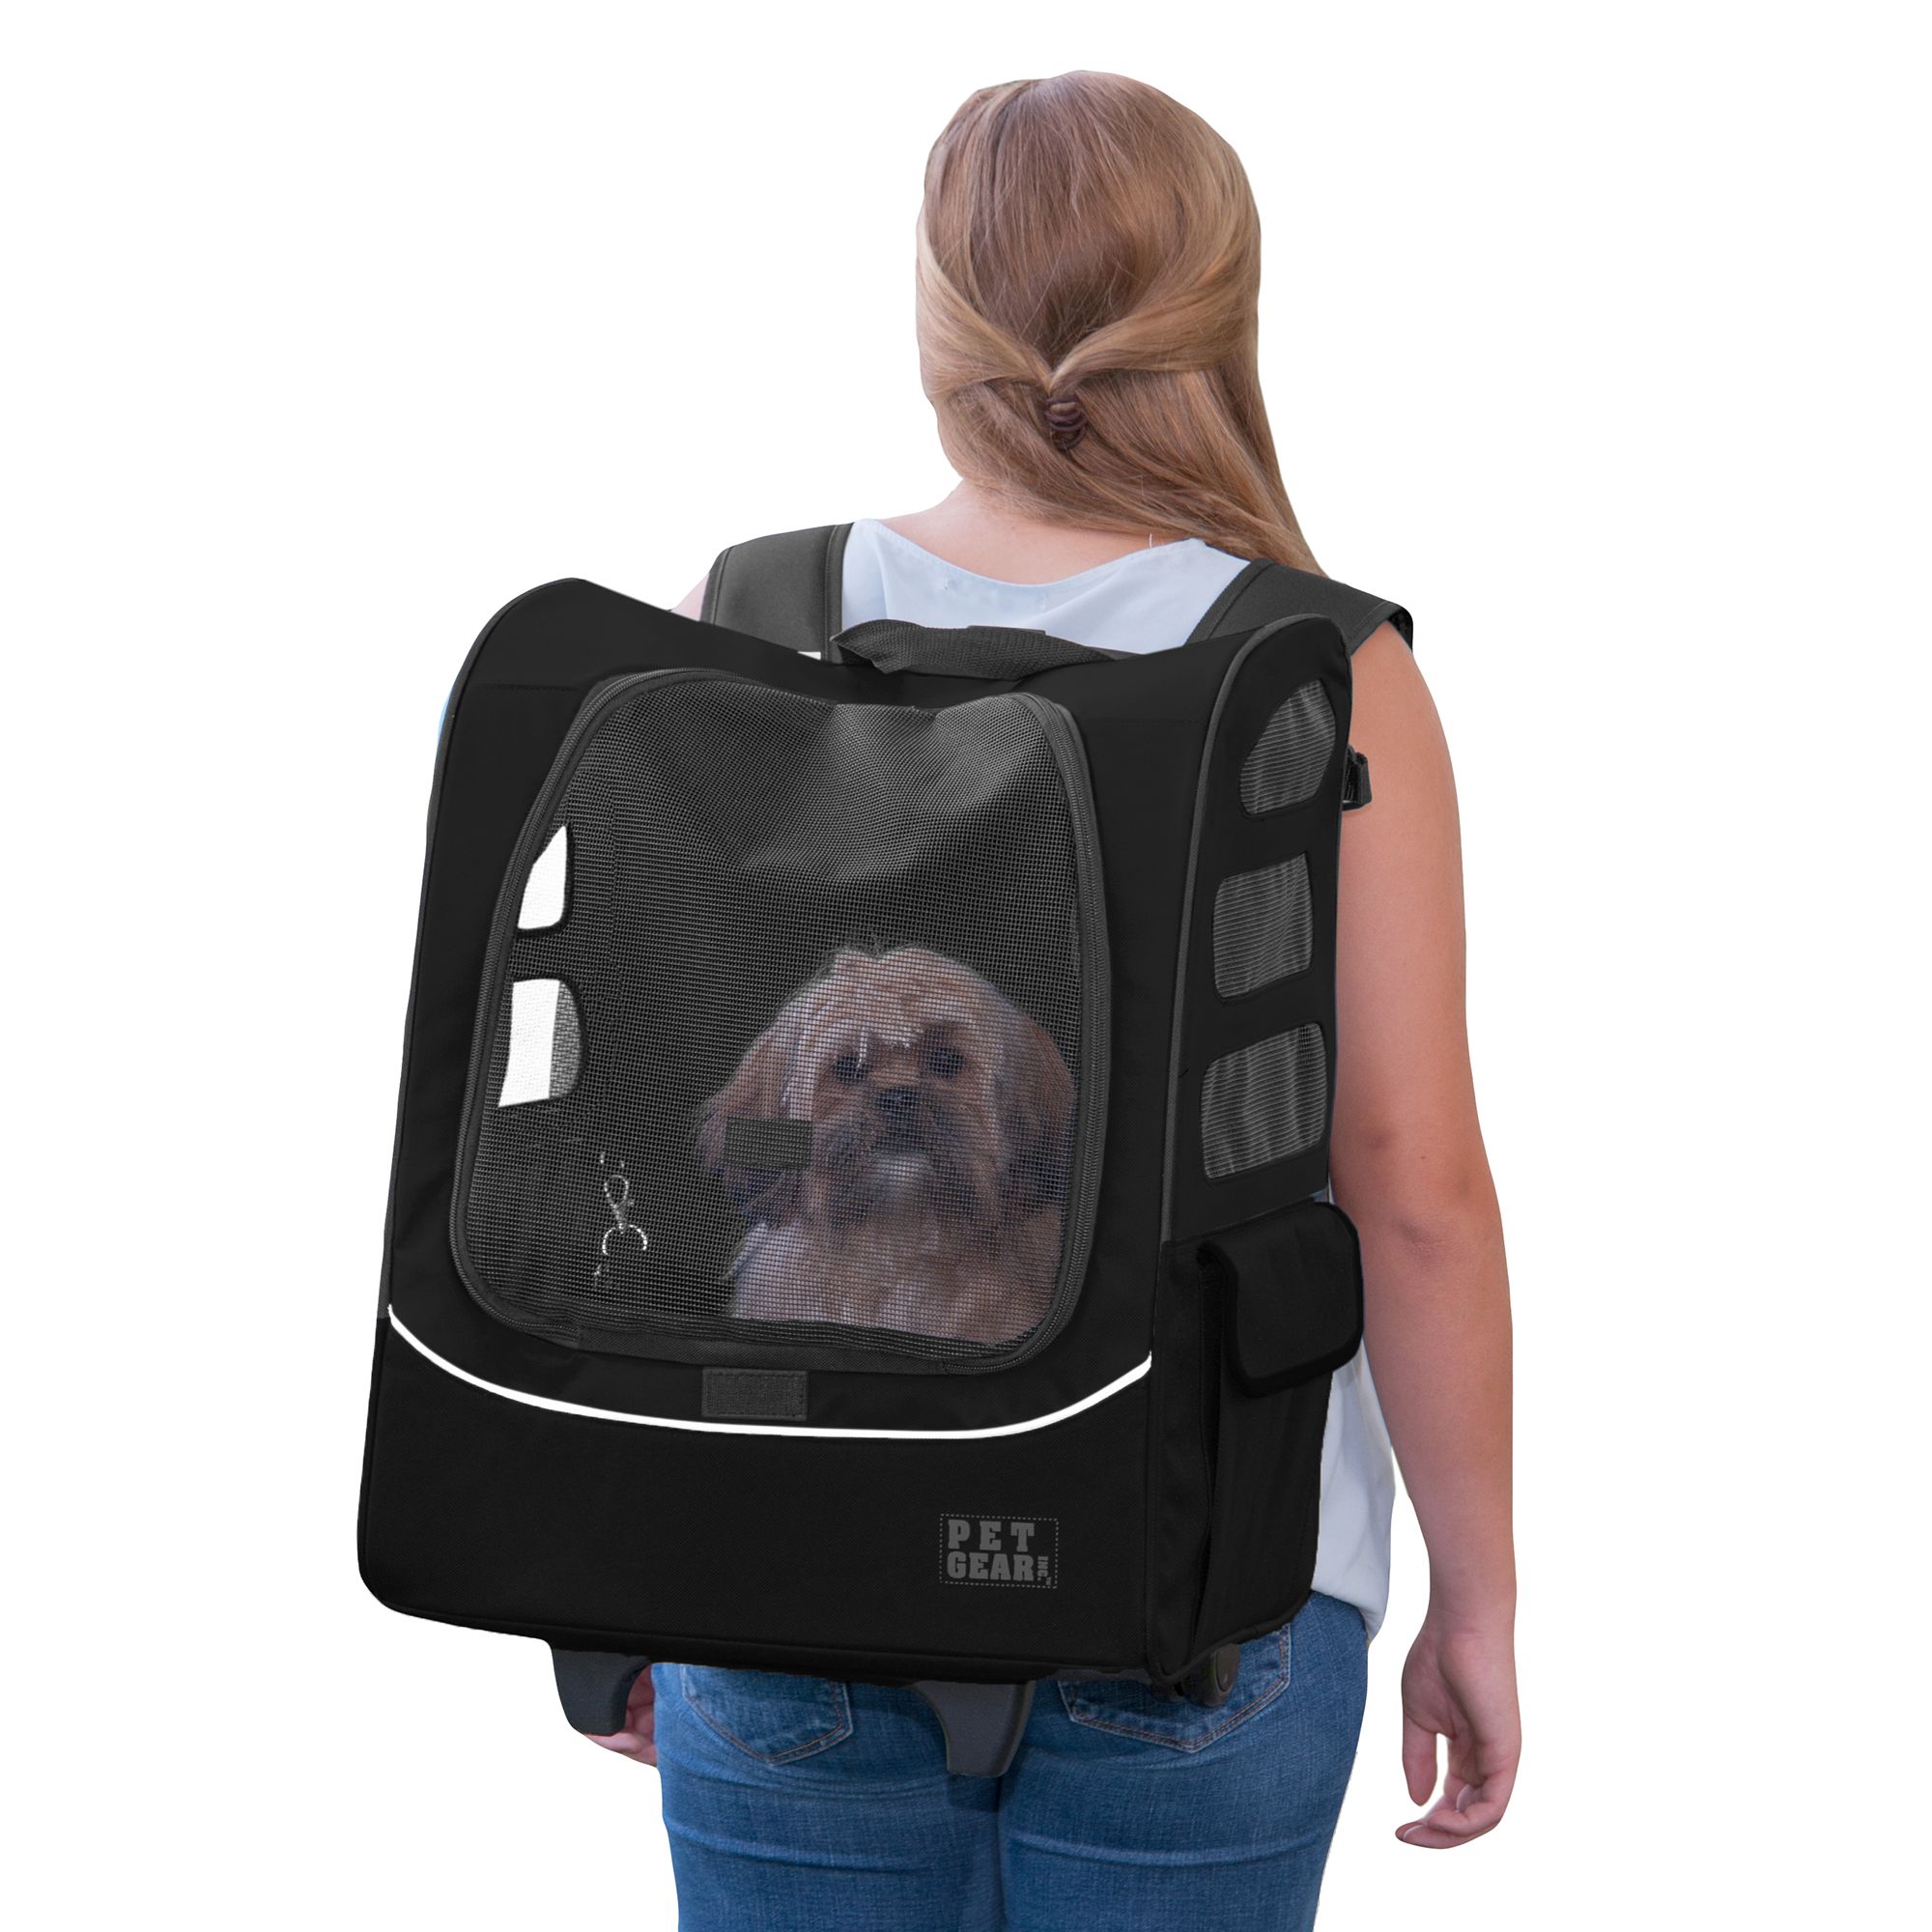 Travler Plus Pet Backpack Carrier 